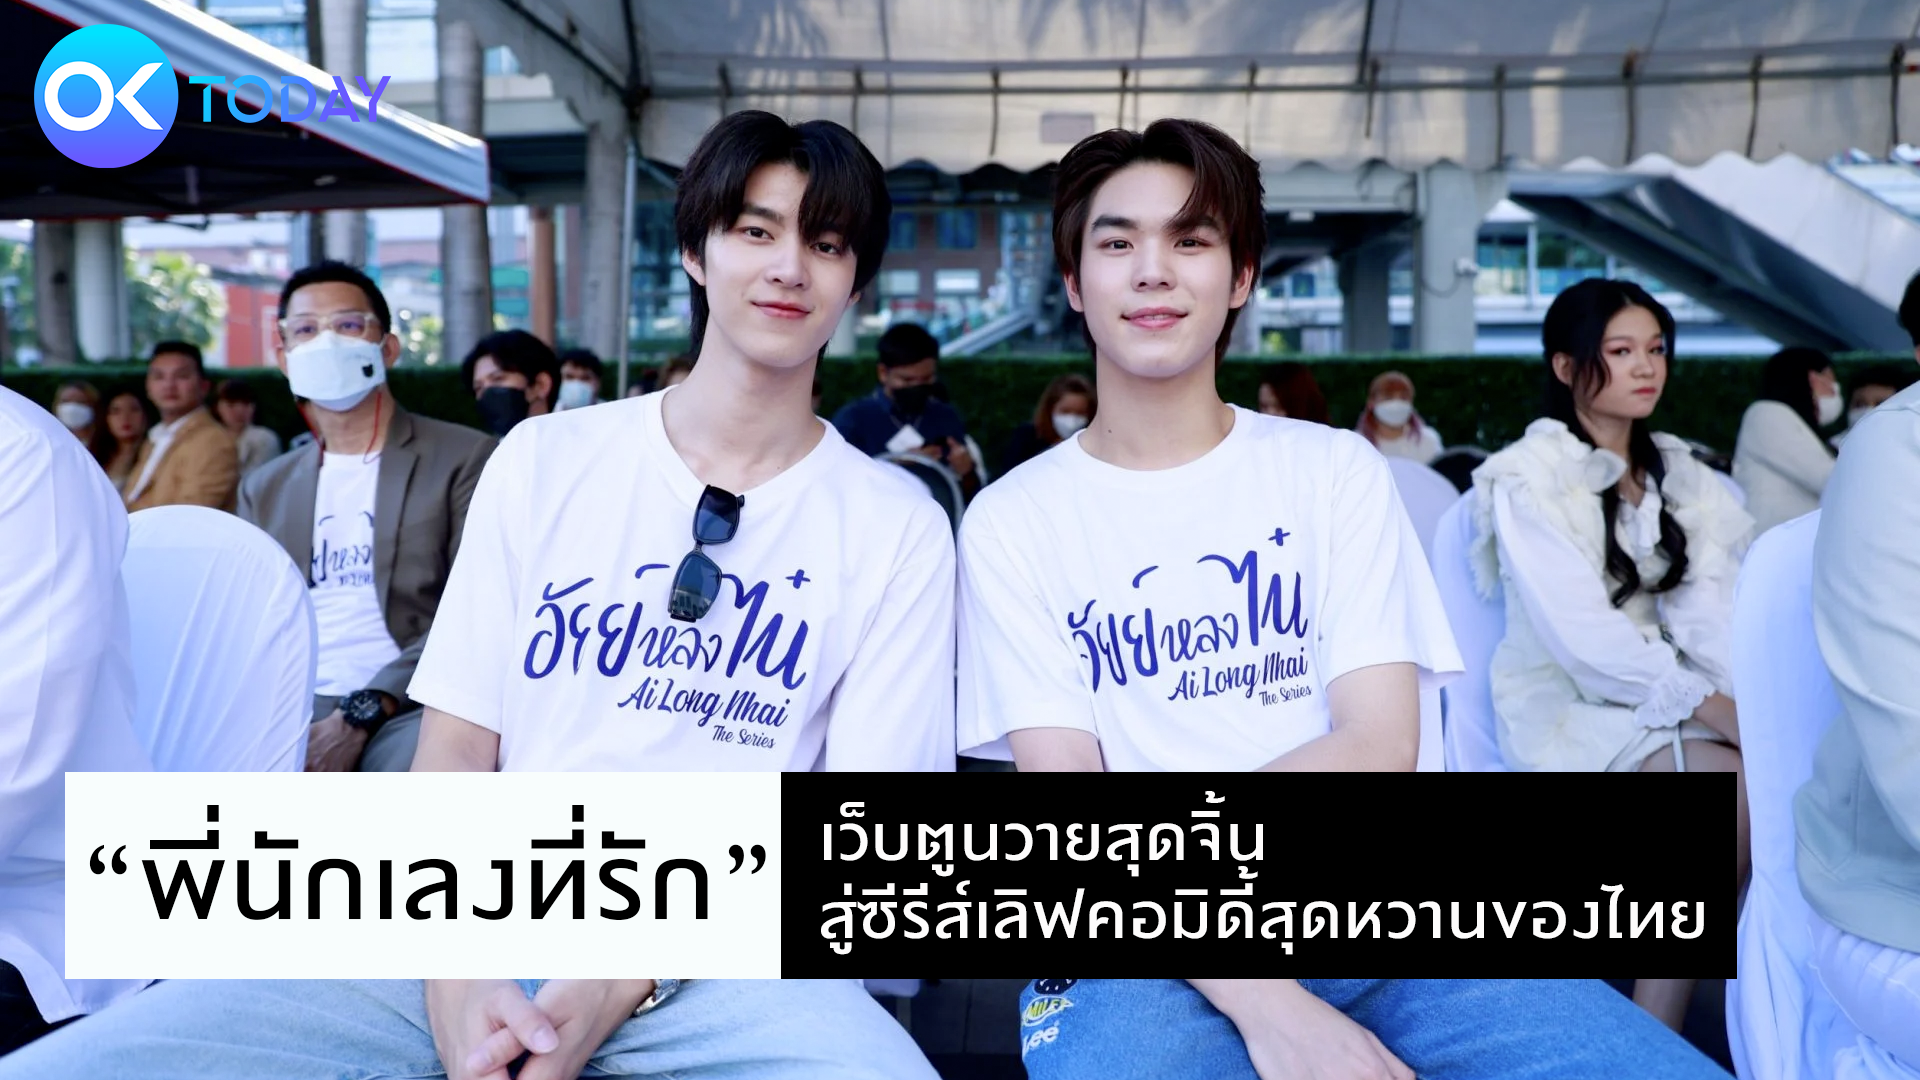 “พี่นักเลงที่รัก” เว็บตูนวายสุดจิ้น สู่ซีรีส์เลิฟคอมิดี้สุดหวานของไทย